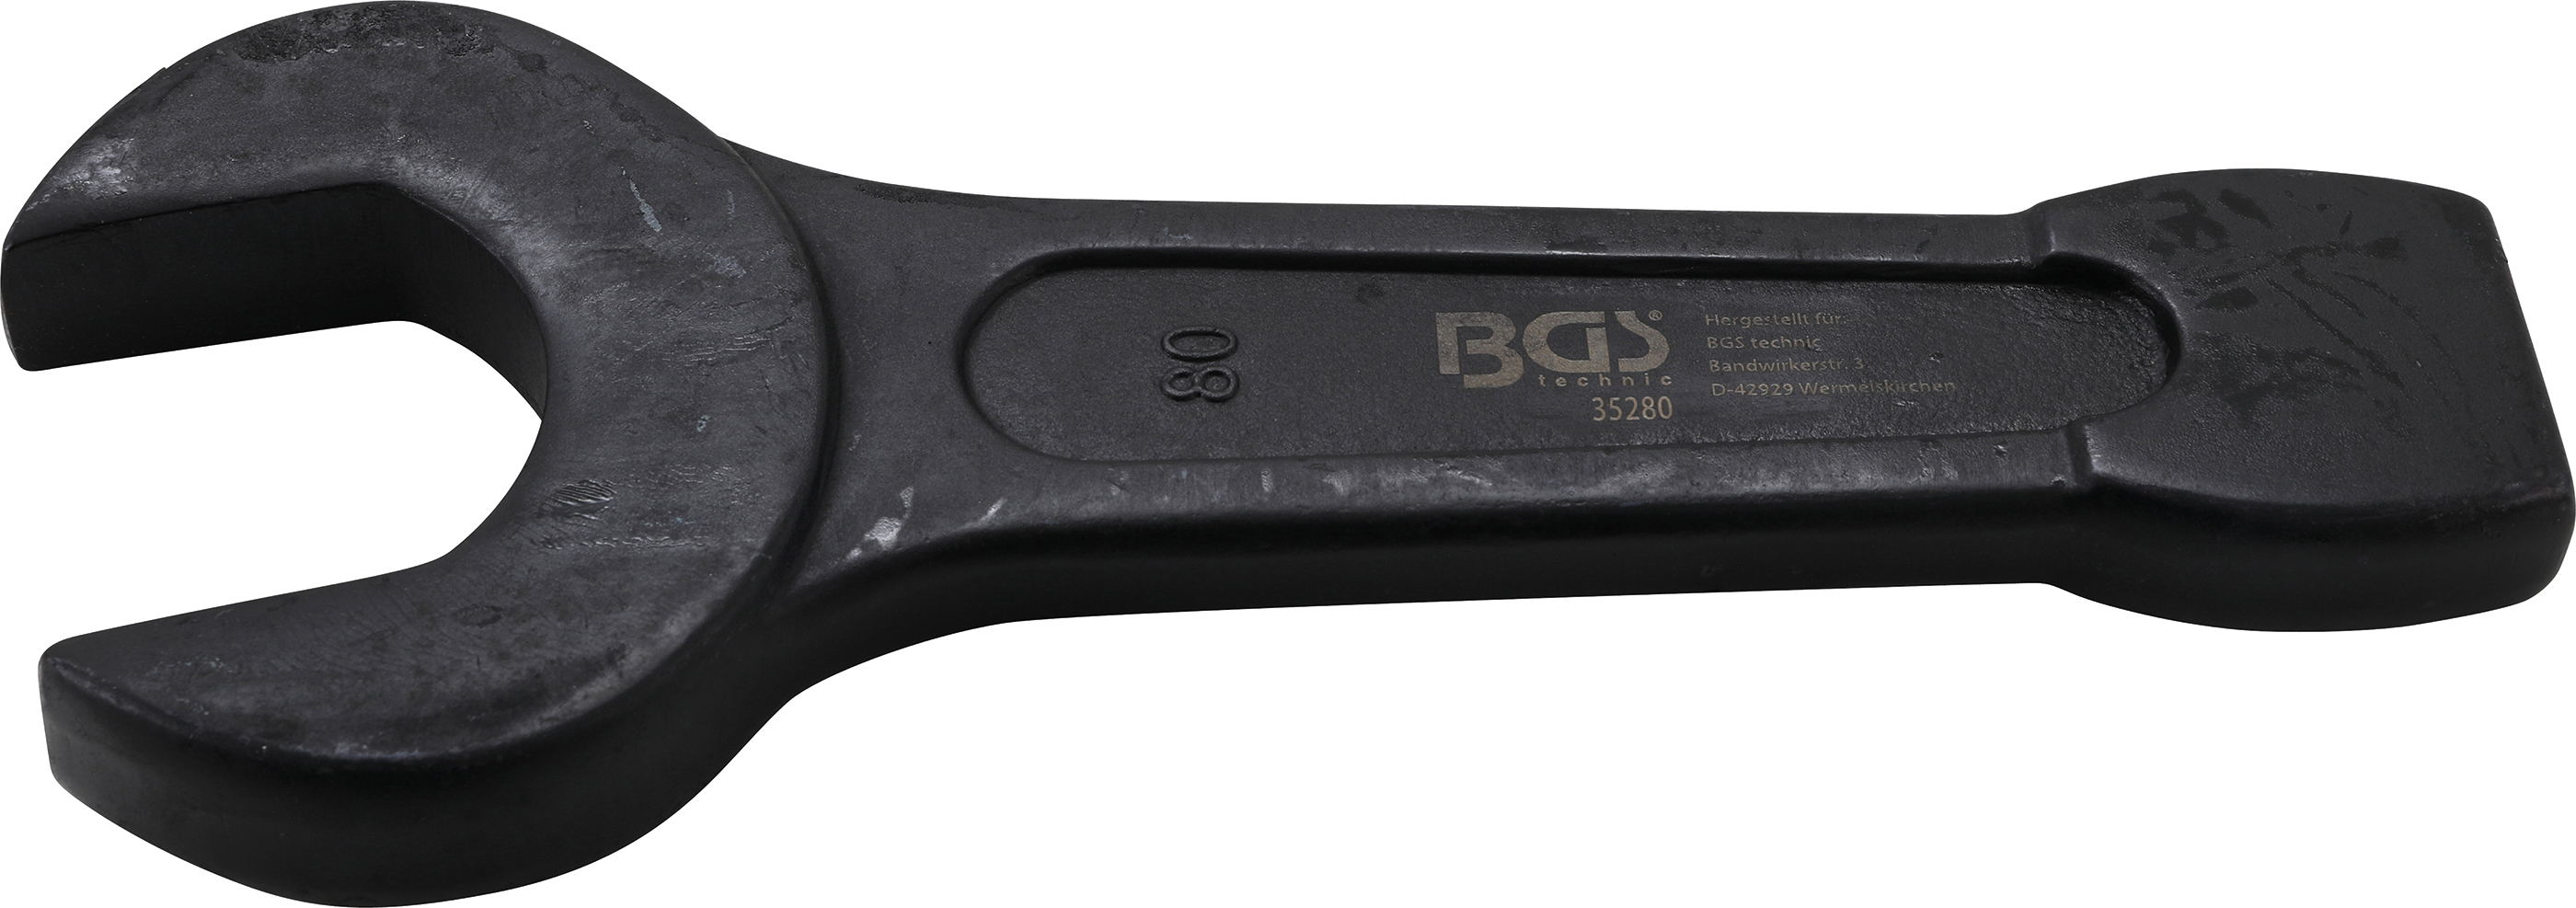 BGS 35280 Cheie fixă de impact 80  mm